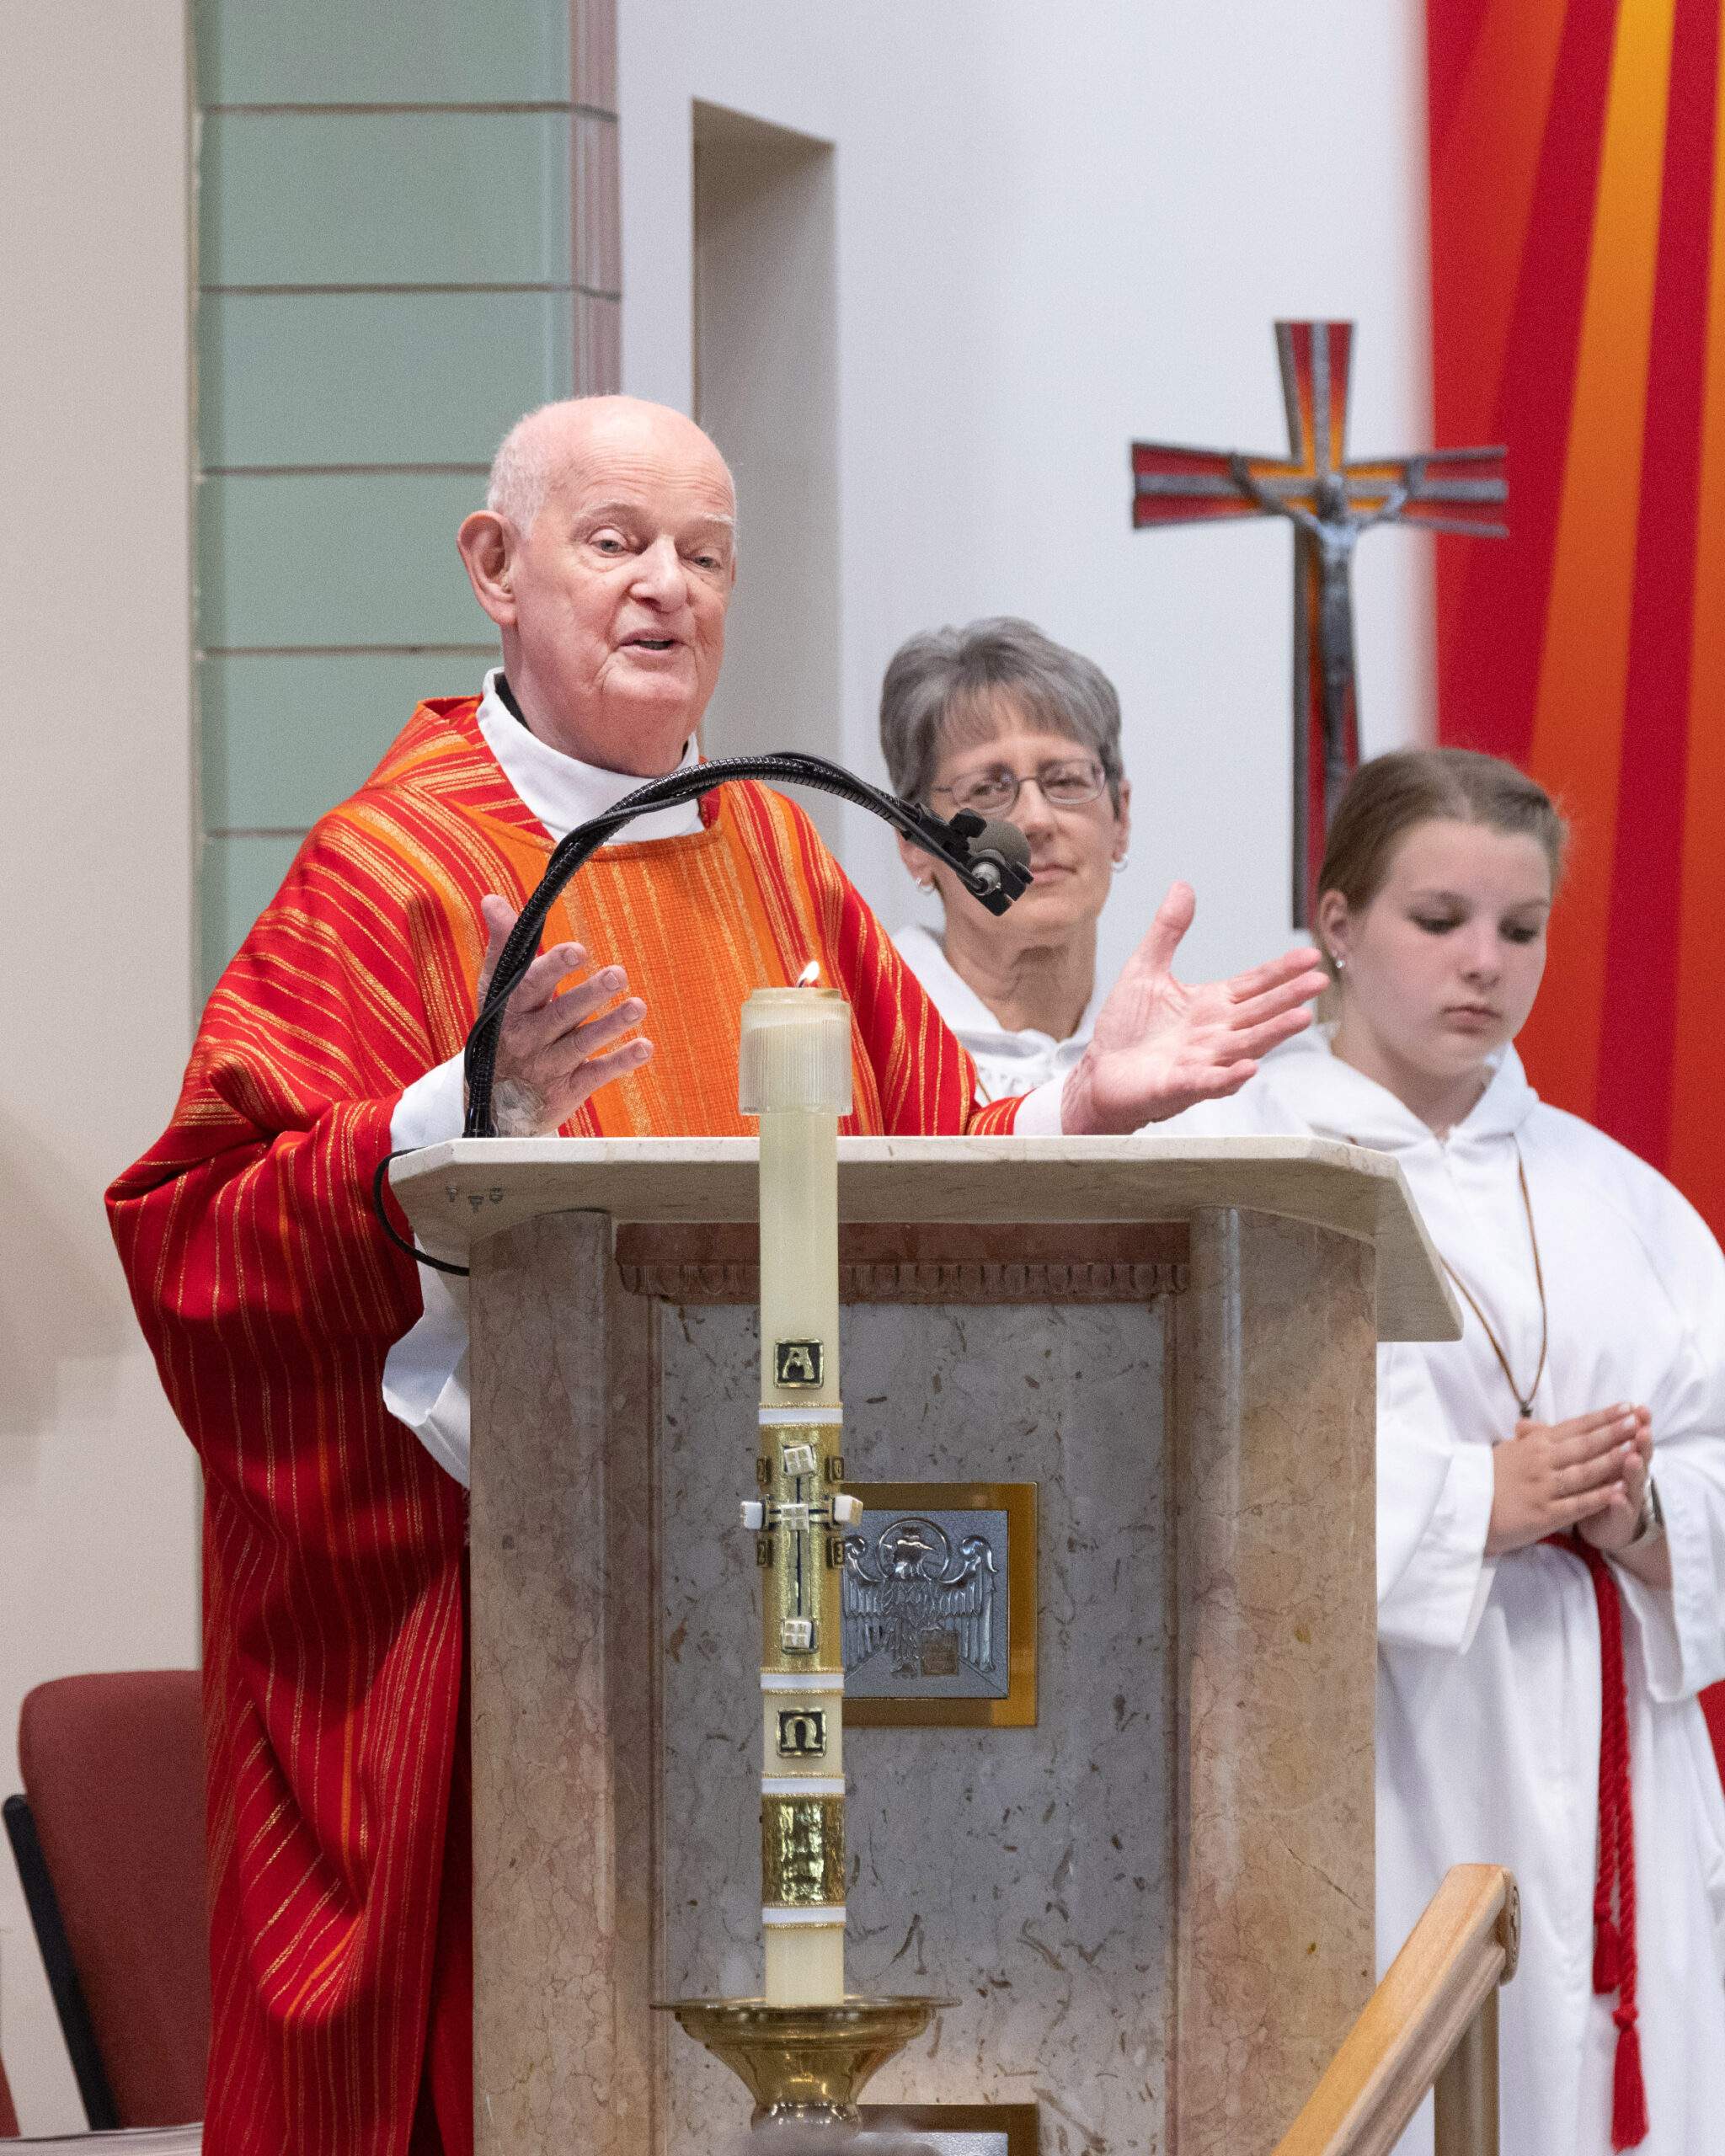 Father Joseph Zamary at his retirement Mass